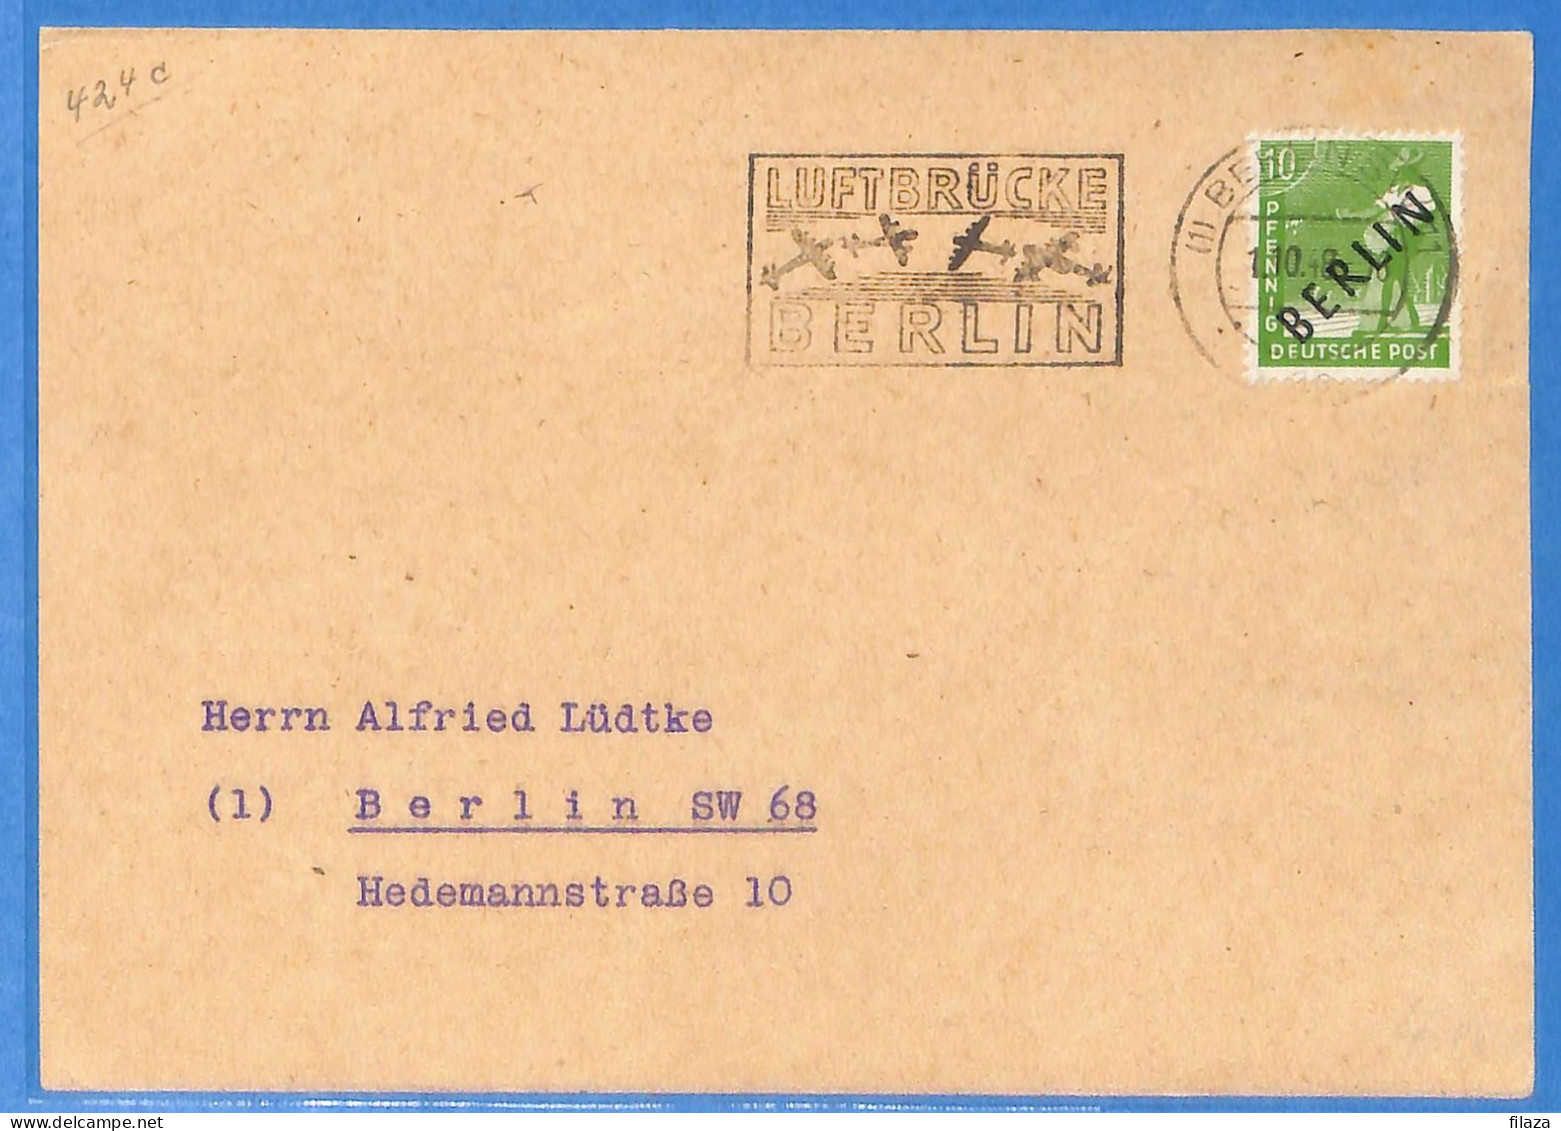 Berlin West 1948 - Carte Postale De Berlin - G33040 - Covers & Documents